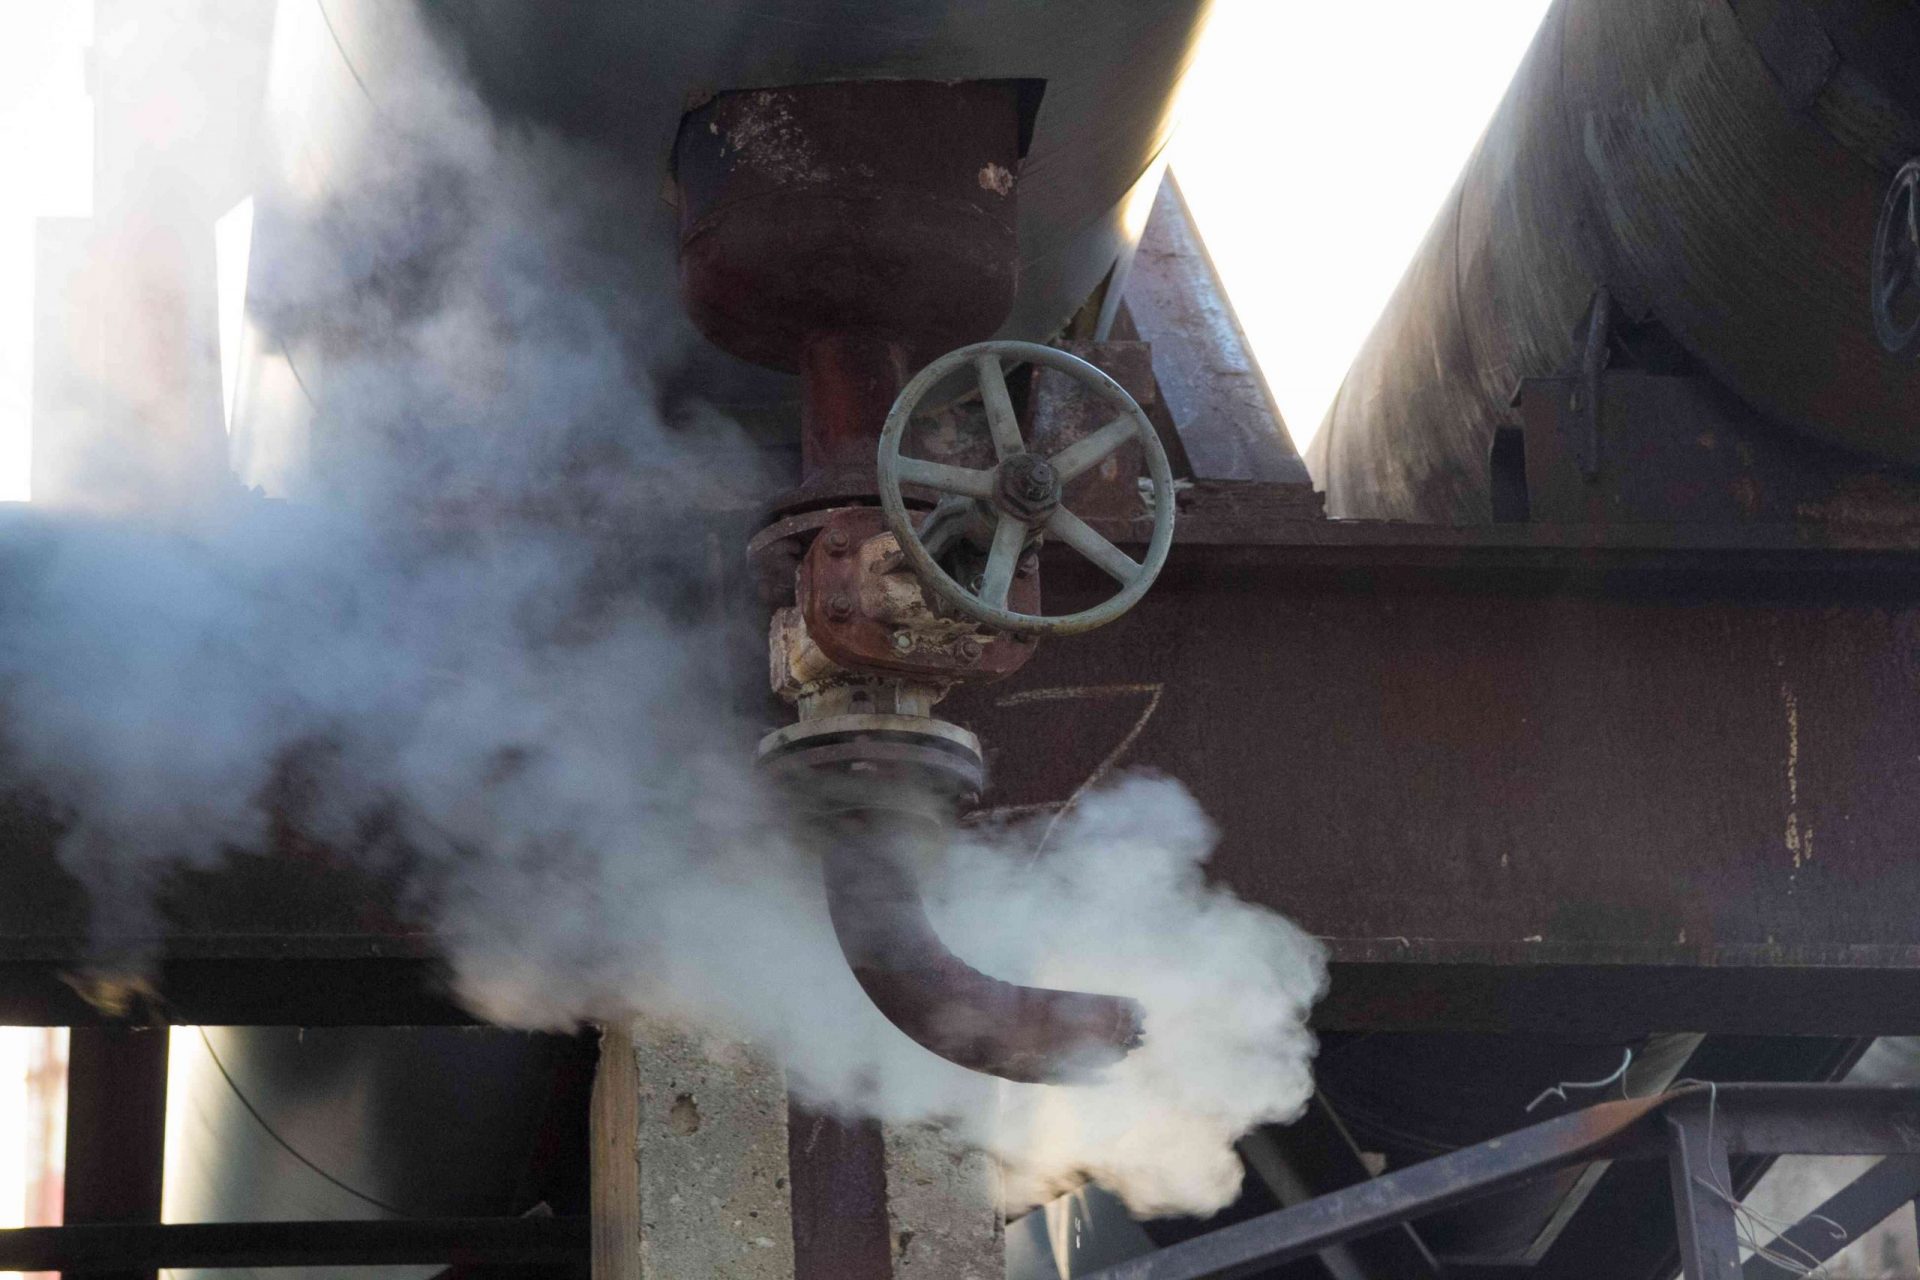 Fuga de vapor en la tubería de calor. Salida de vapor del tubo oxidado con válvula